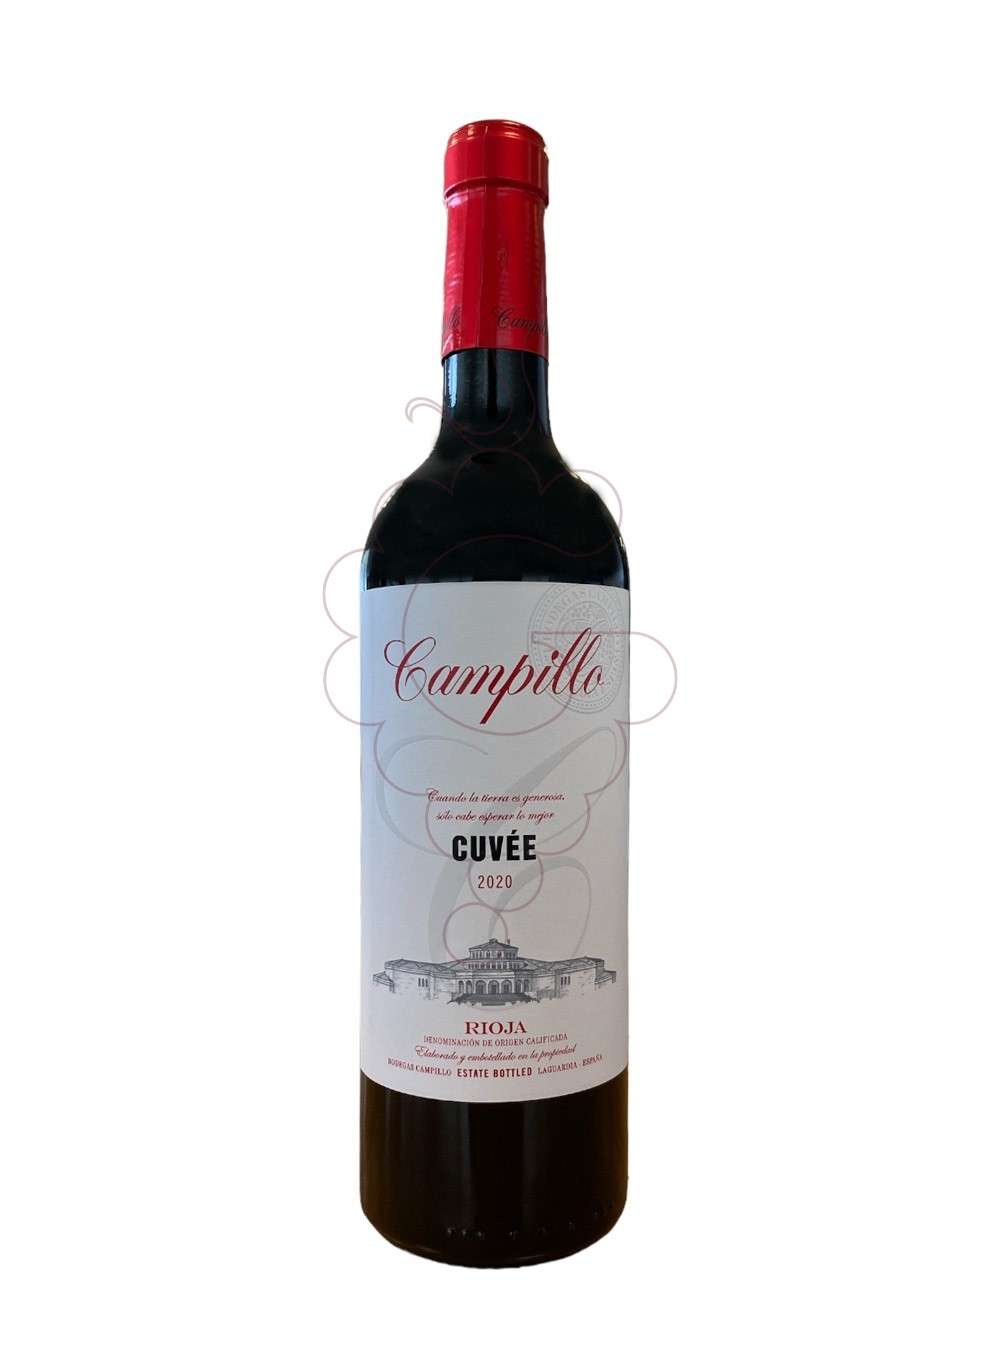 Foto Campillo cuvee 2020 75 cl vi negre